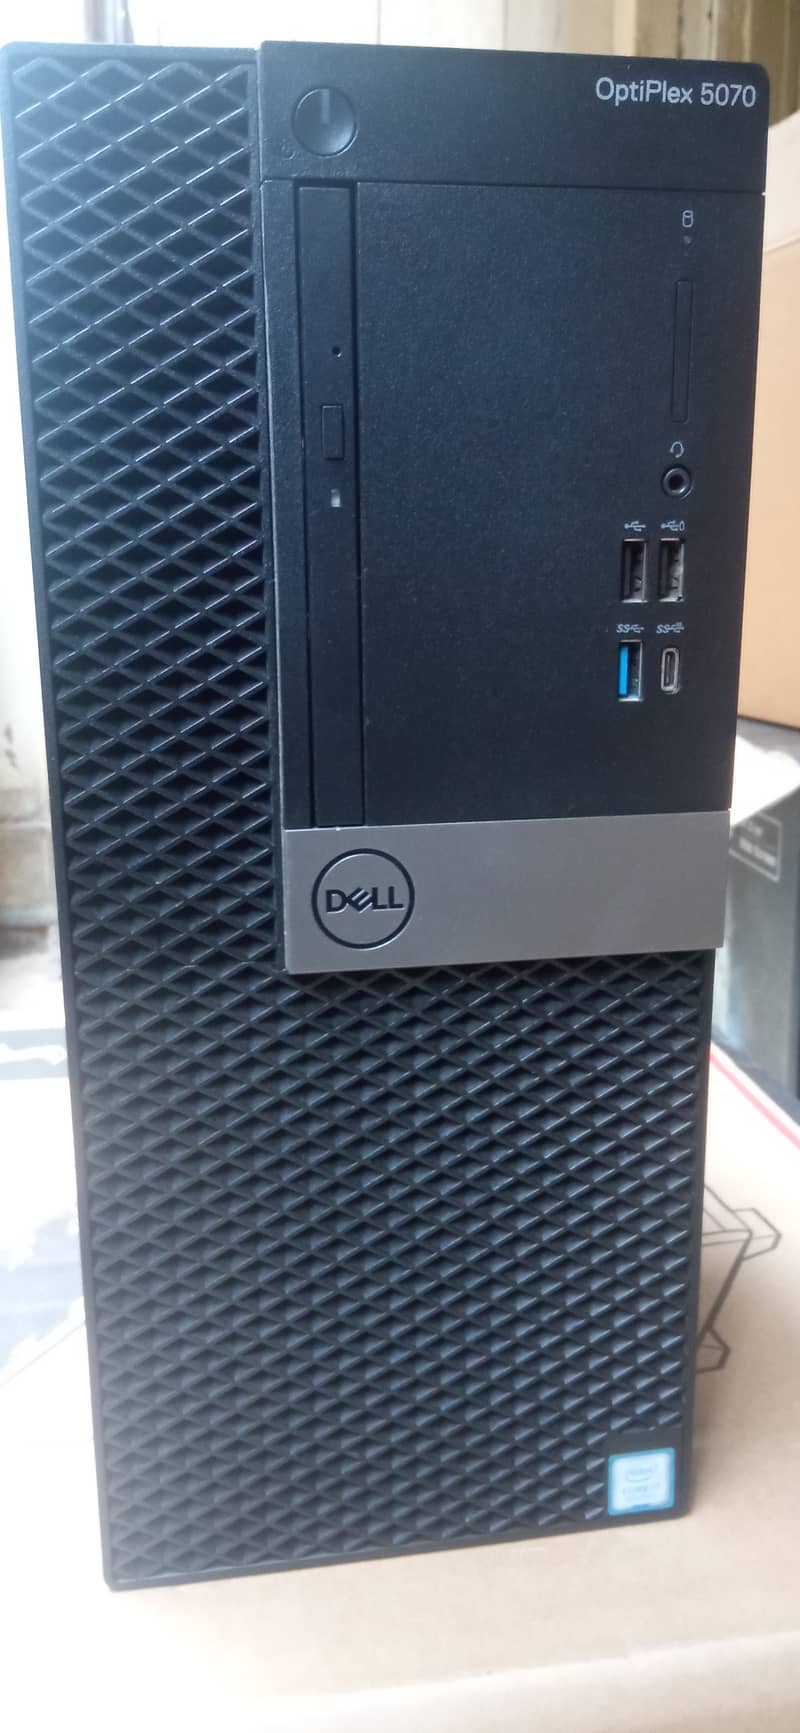 Dell optiplex 5070 Tower 9th Gen intel i7 9700 1TB HDD 0